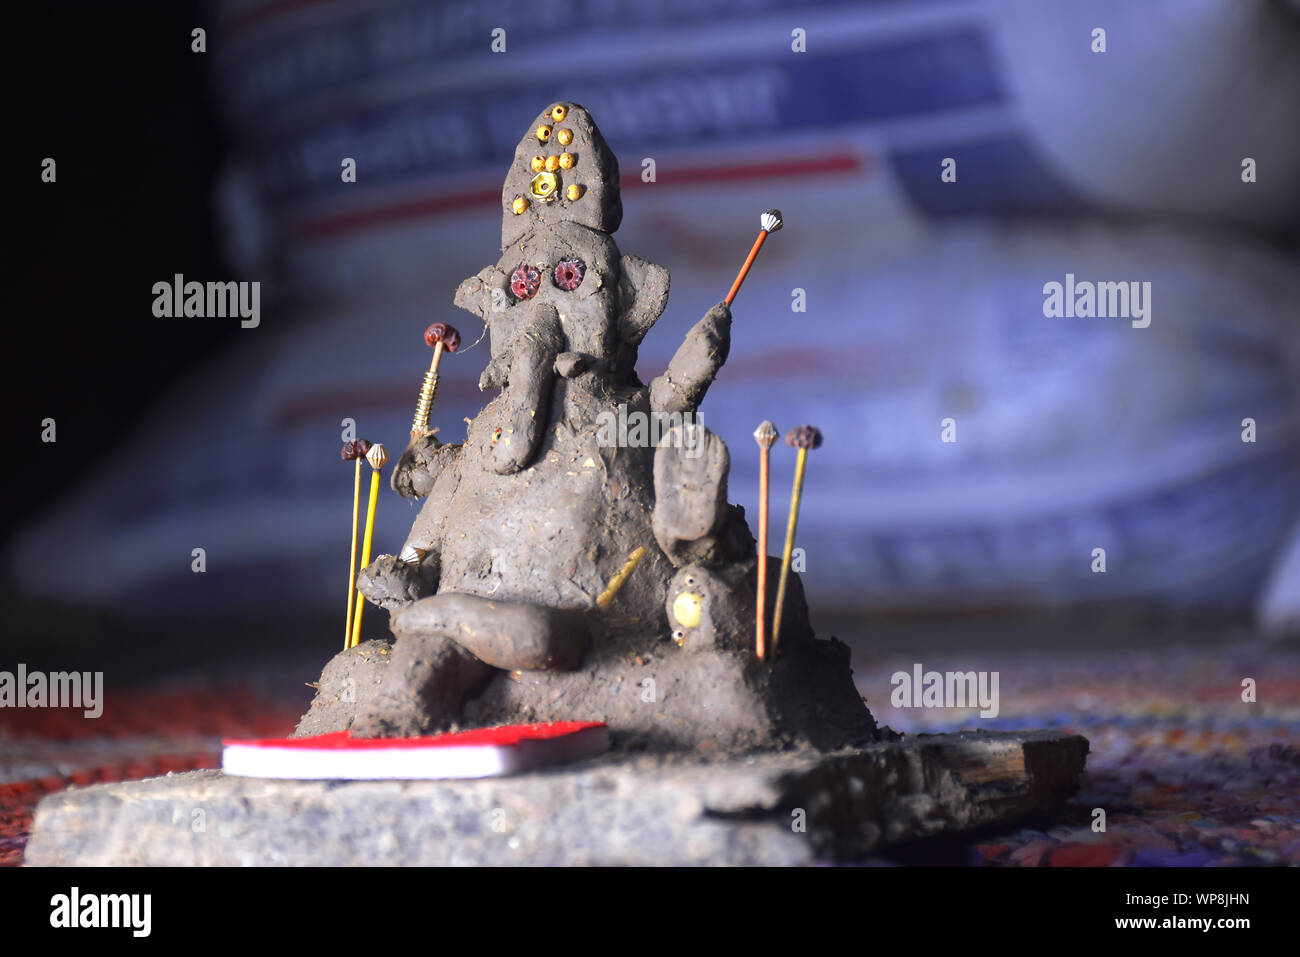 Signore Ganesha nel fuoco selettivo, costituito da argilla con colorati blur sullo sfondo, in un villaggio indiano Foto Stock